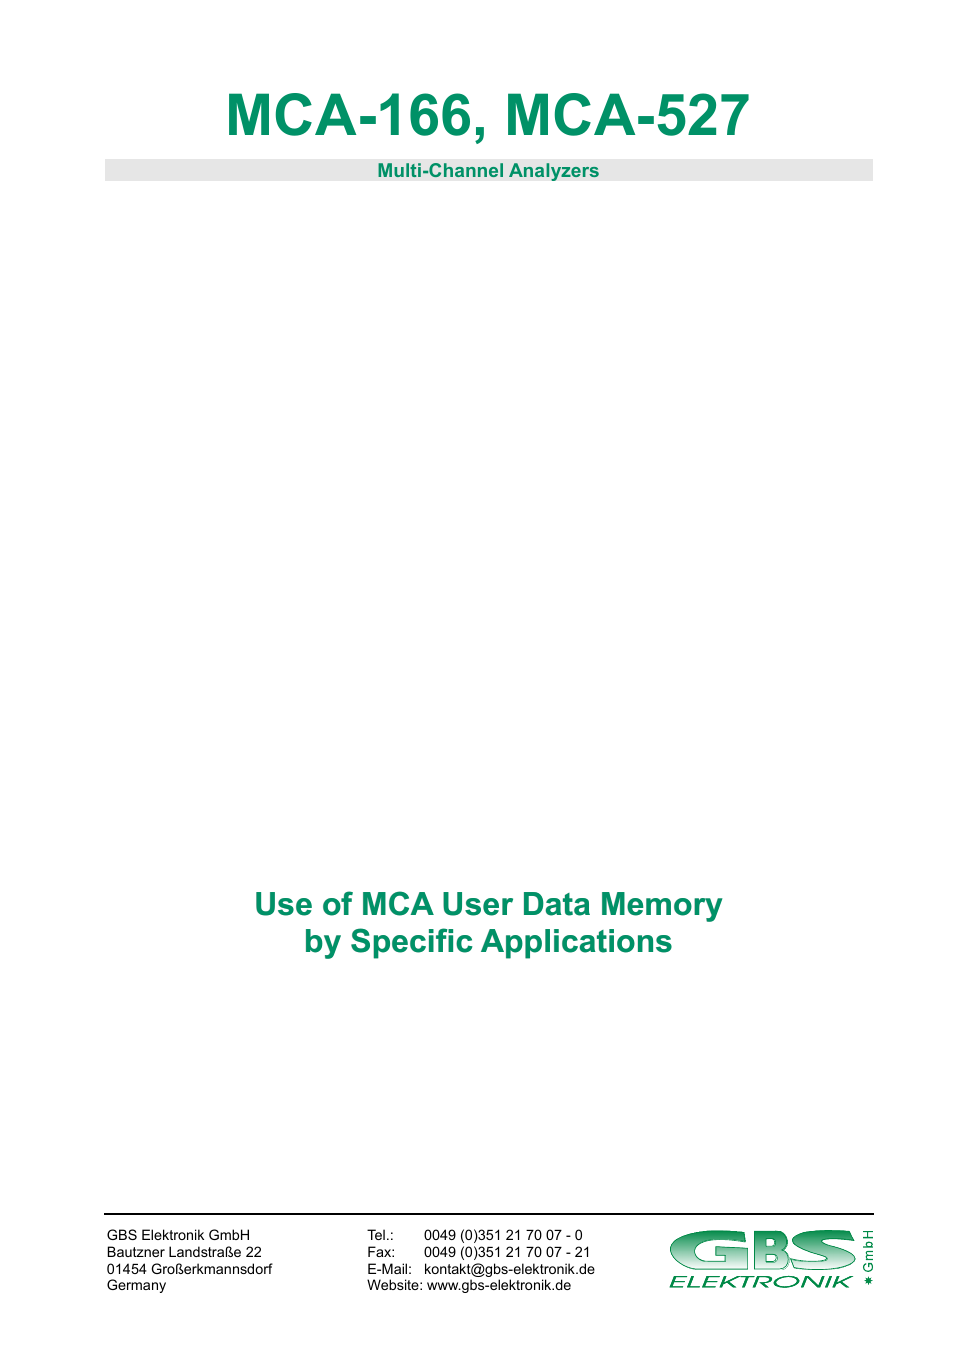 MCA-527 User Data Memory